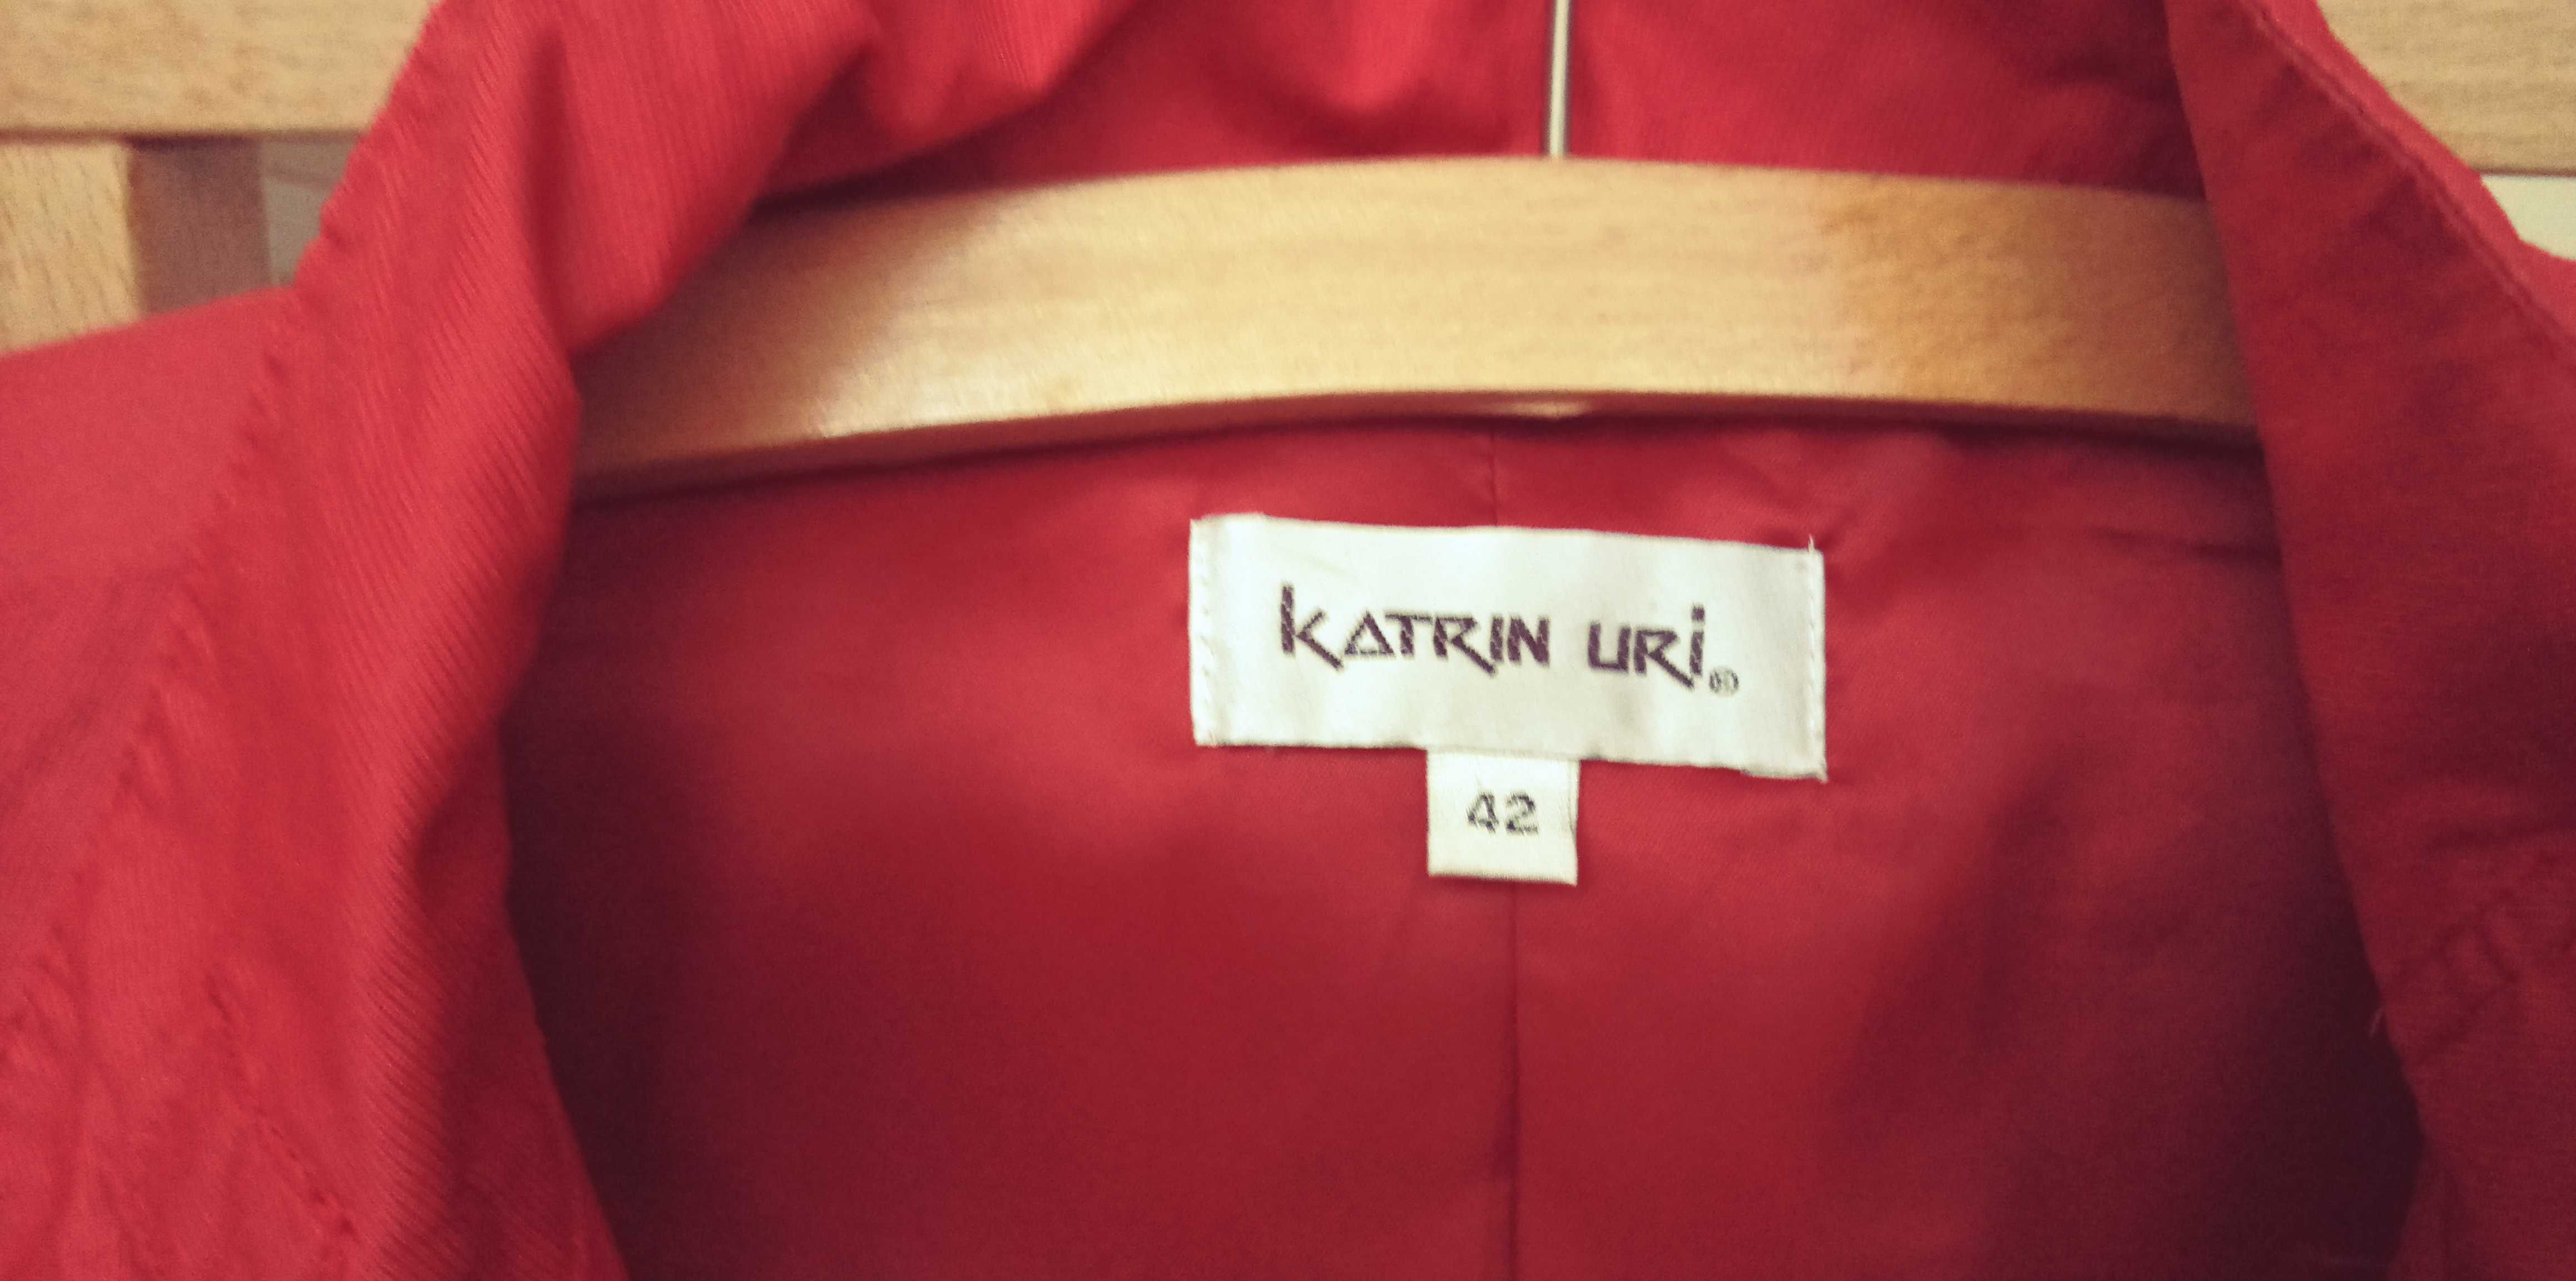 Kurtka Katrin Uri, rozm 42, kolor Czerwony, na podszewce.